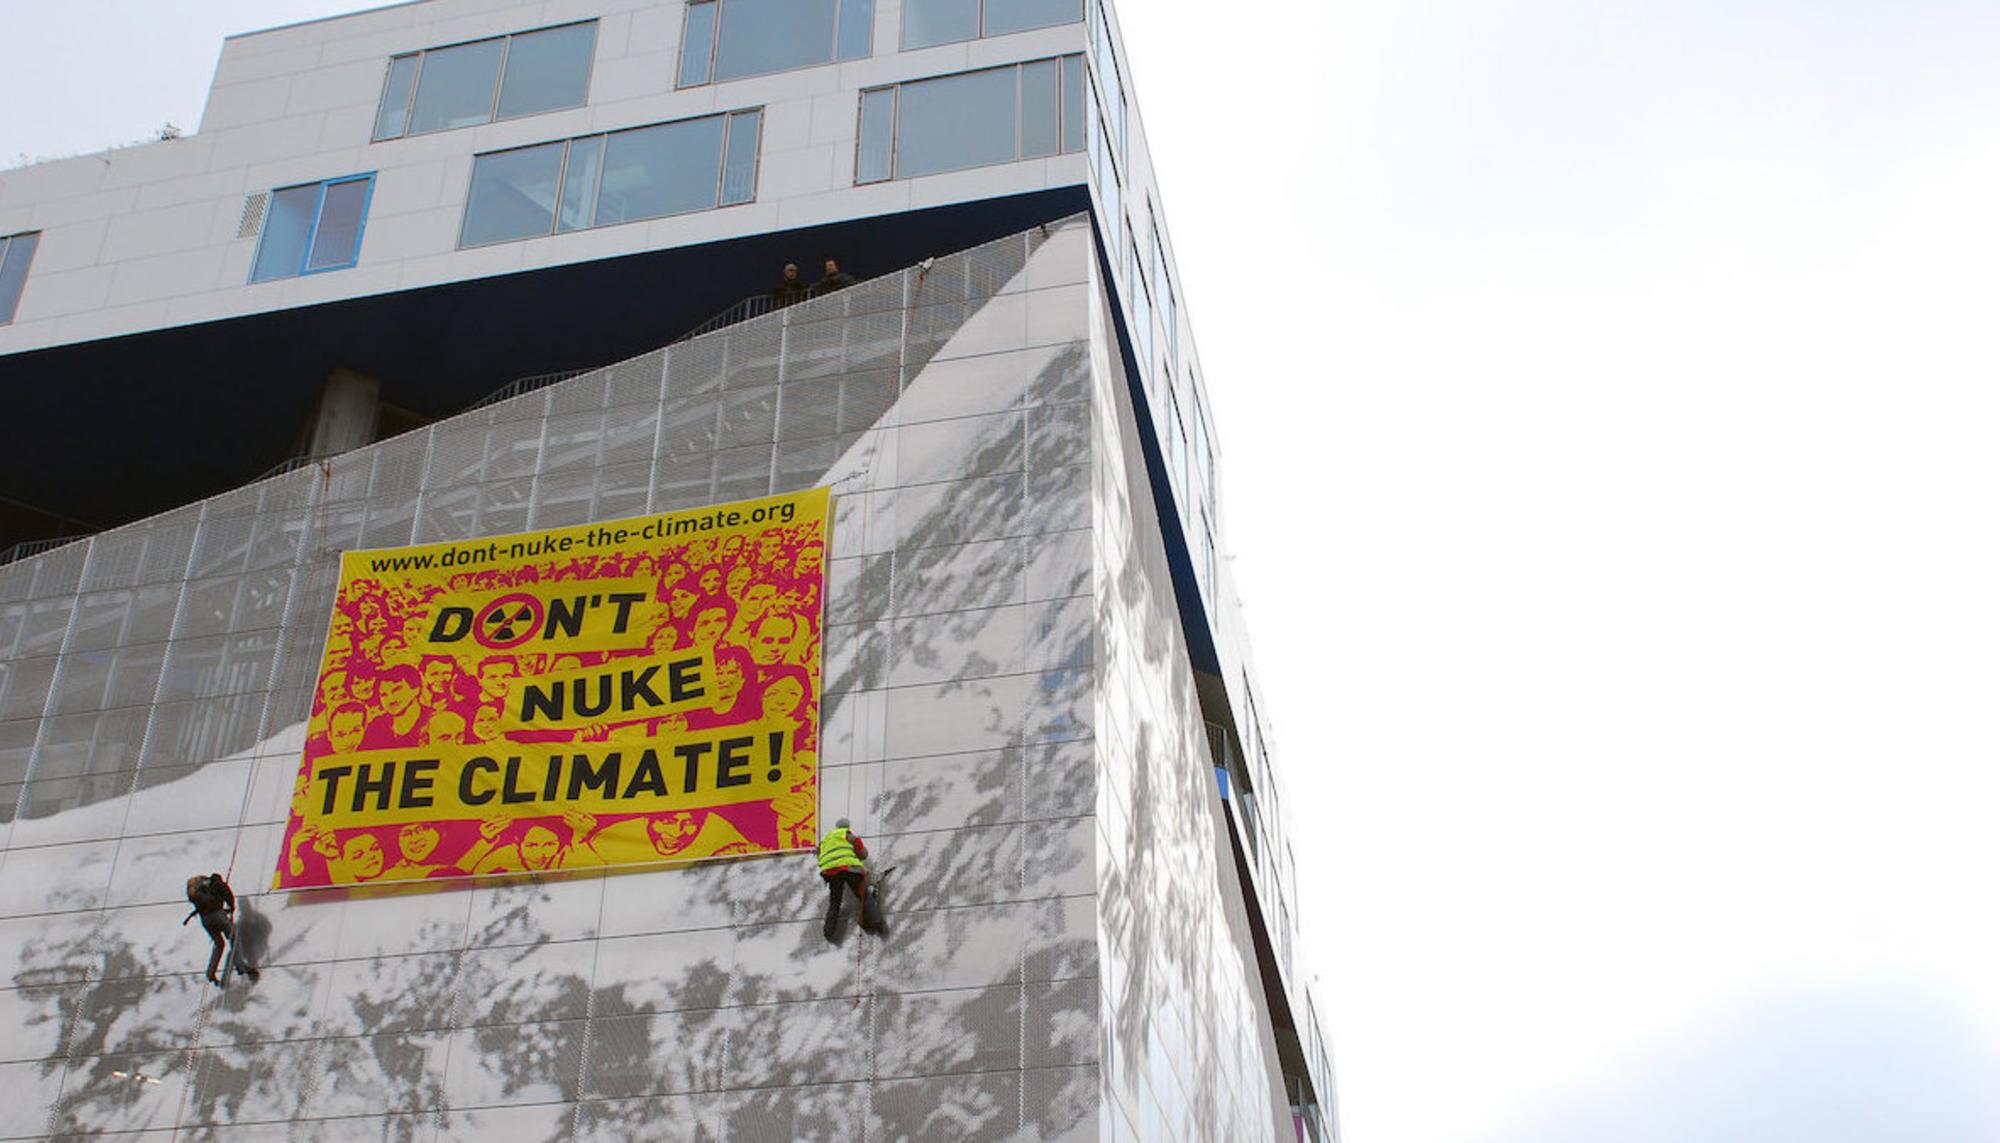 Pancarta ‘Don’t Nuke the Climate!’ en Copenhague, de sortirdunucleaire. Fuente: Beyond Nuclear International